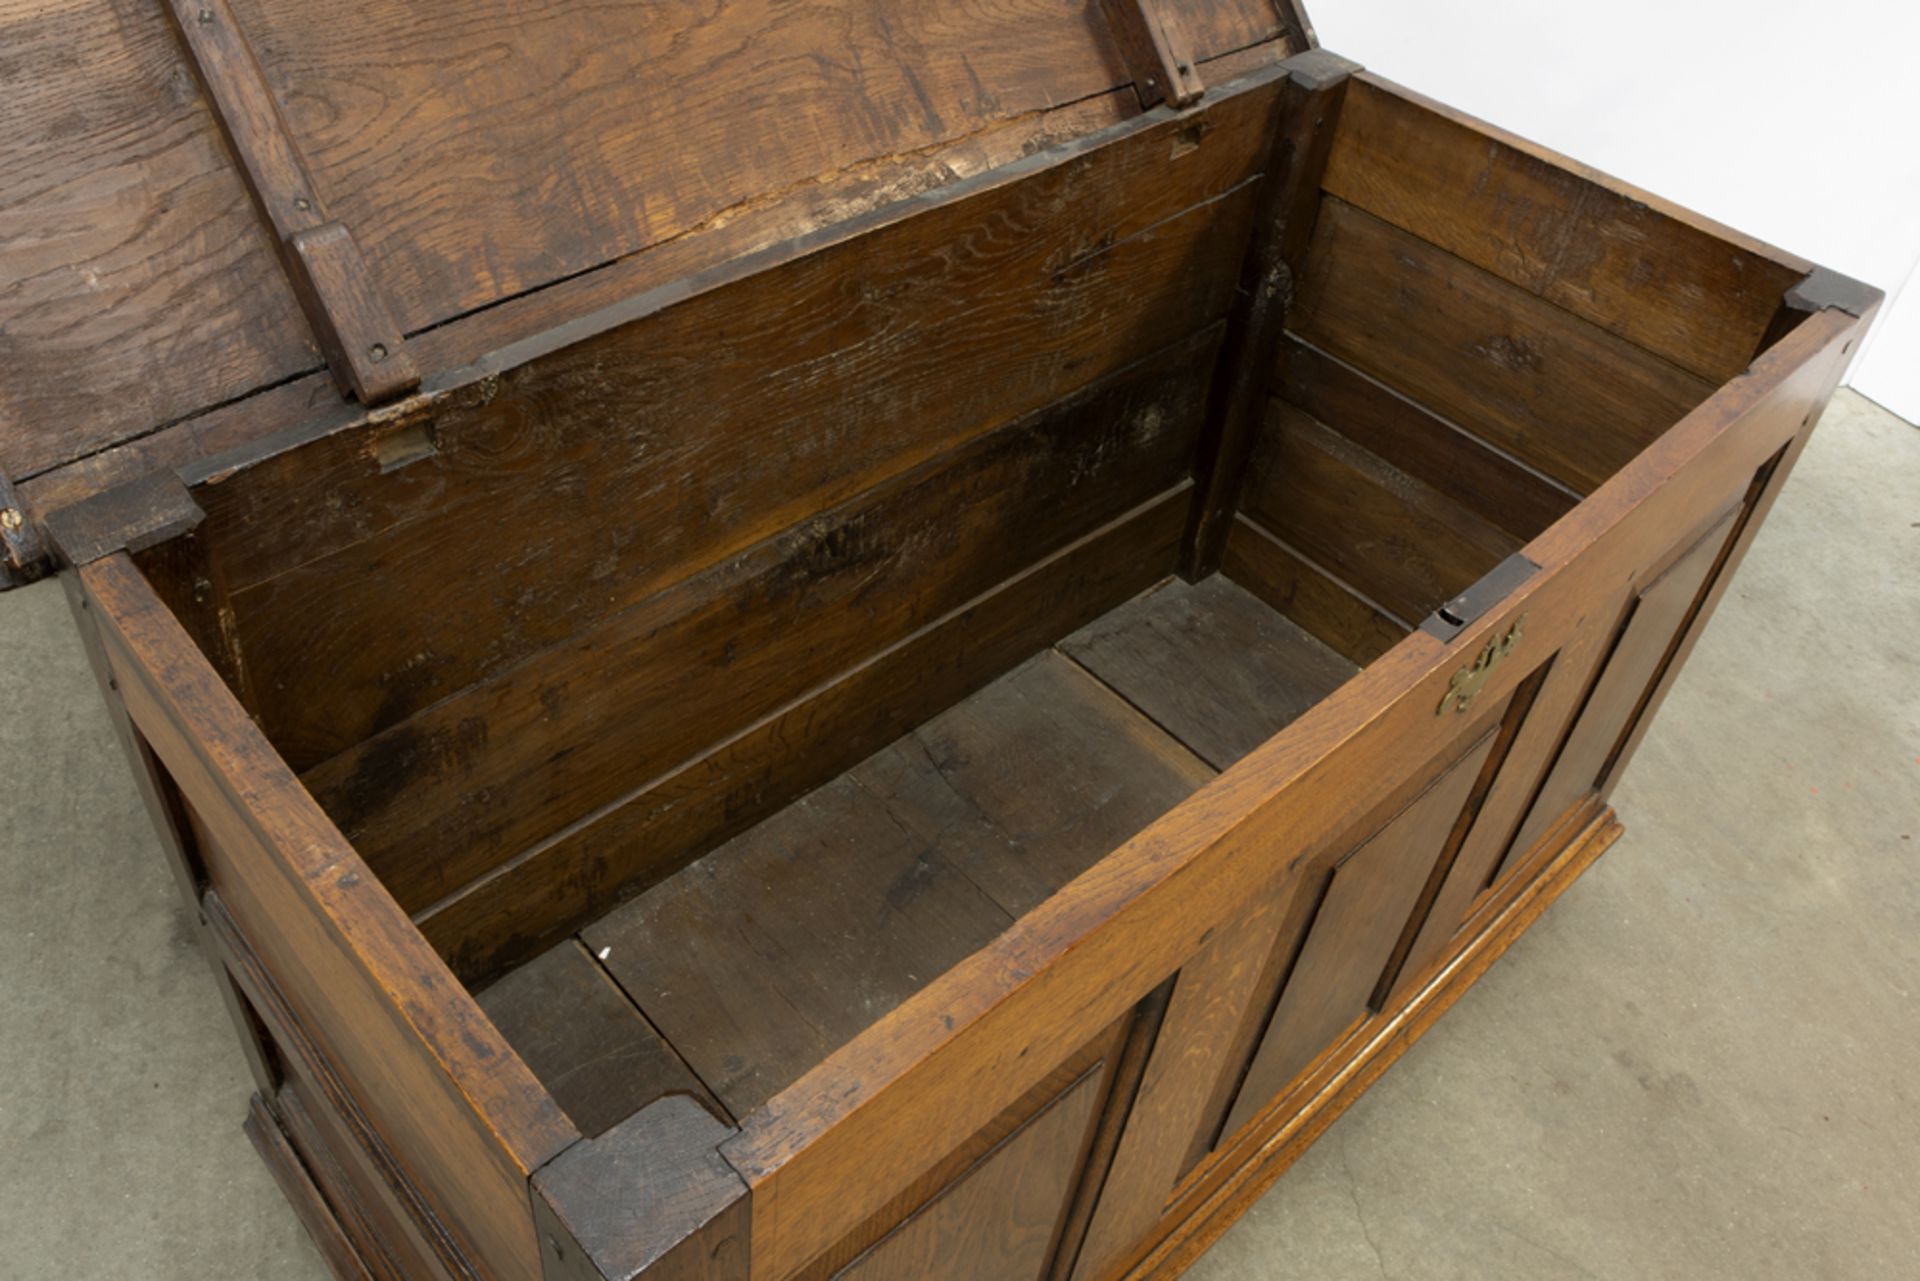 18th Cent. chest in oak || Achttiende eeuwse koffer in eik - Bild 3 aus 3